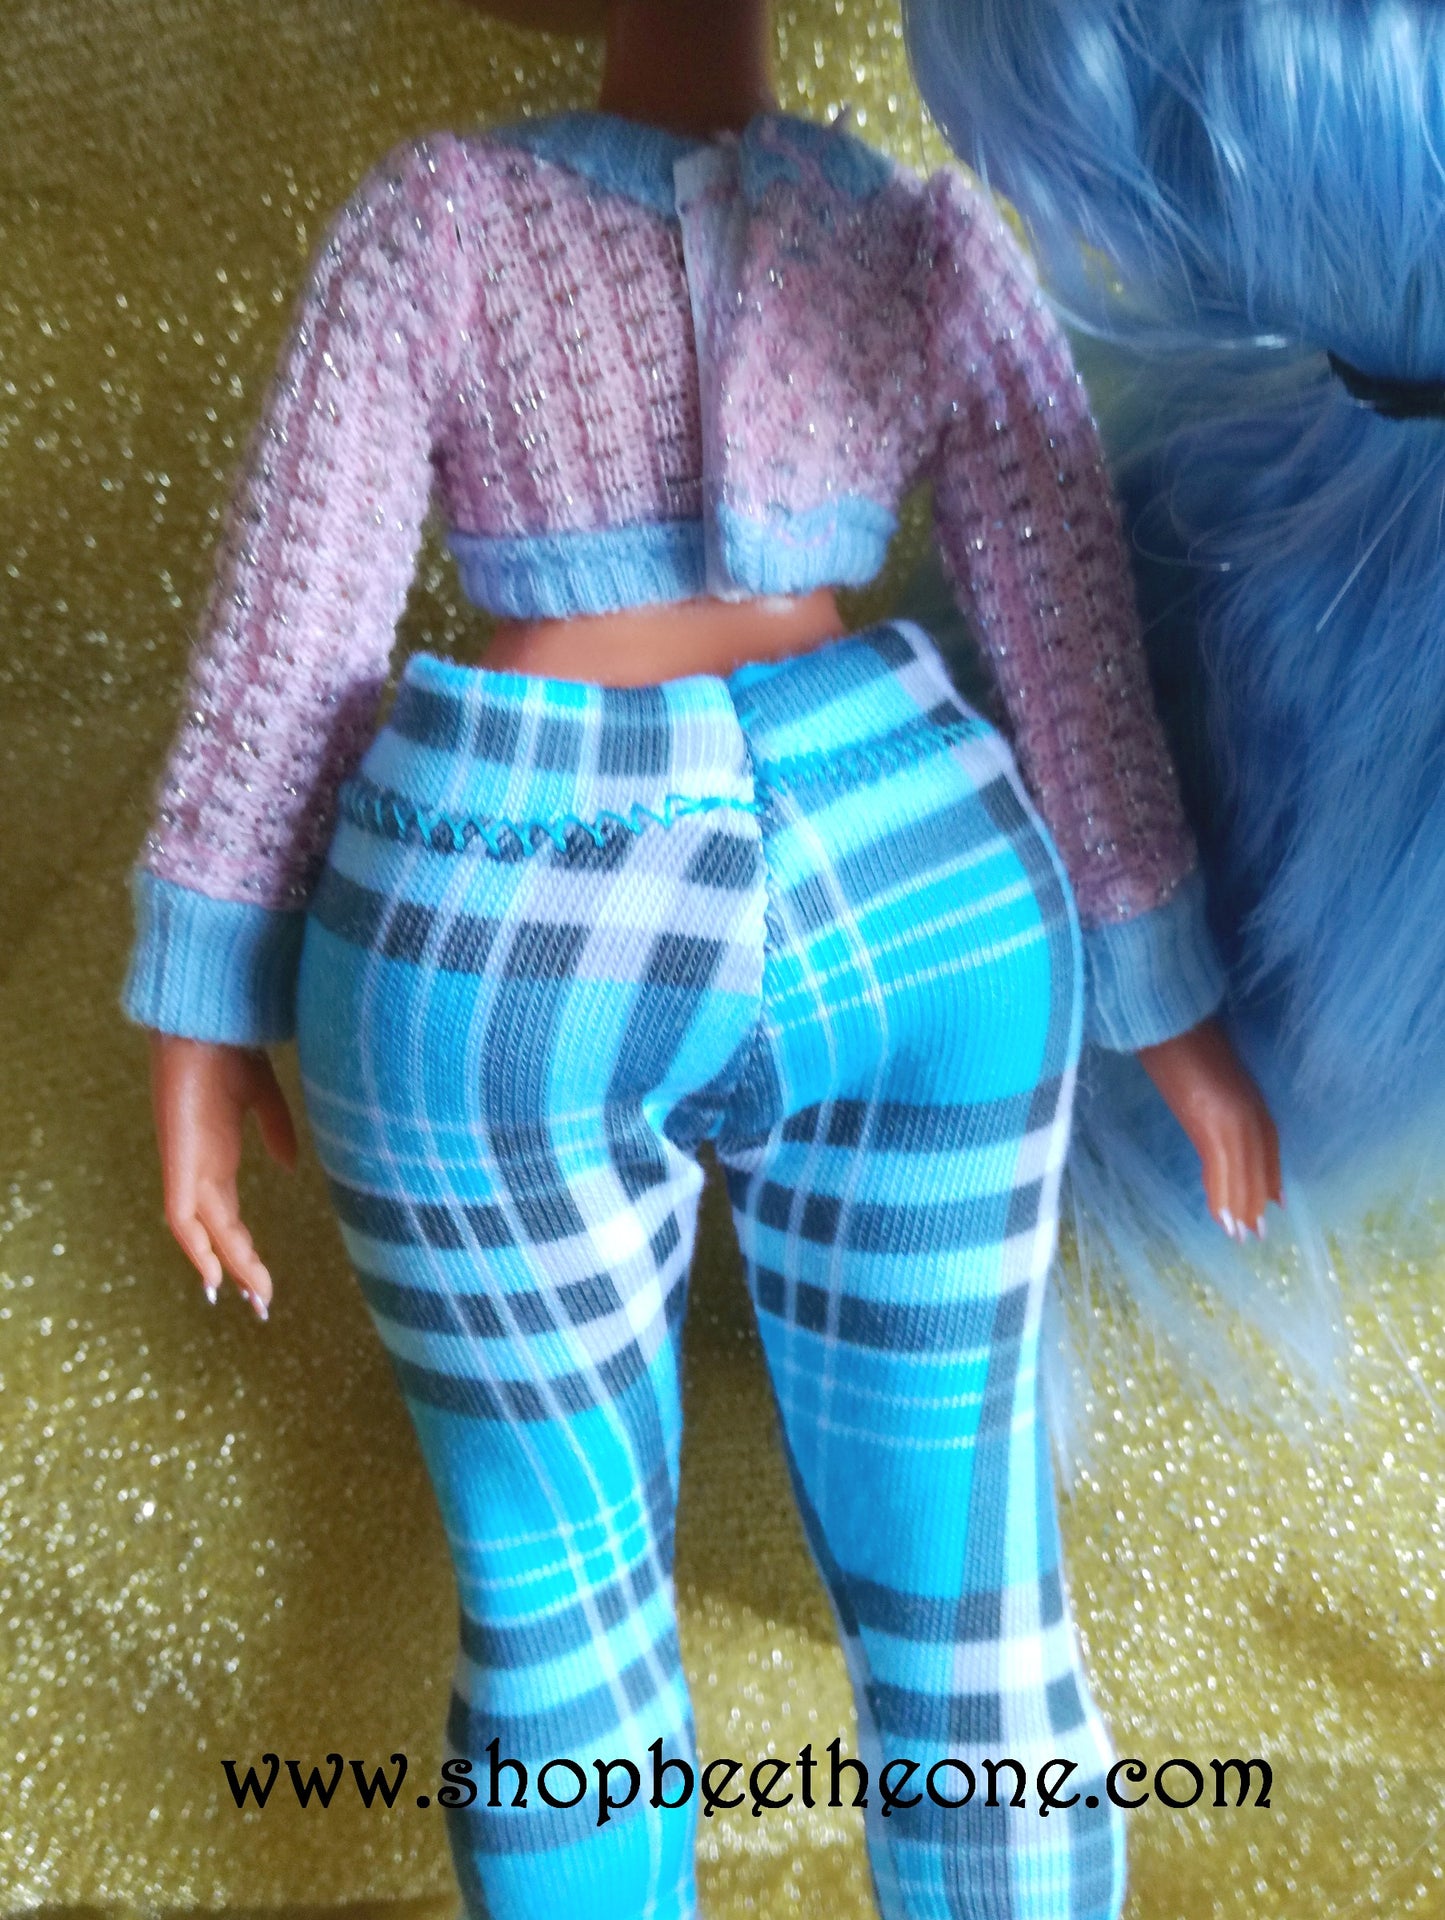 Pantalon collant leggings long motif tartan pour poupées L.O.L Surprise! O.M.G - 3 coloris - par Bee the One - Collection Basics